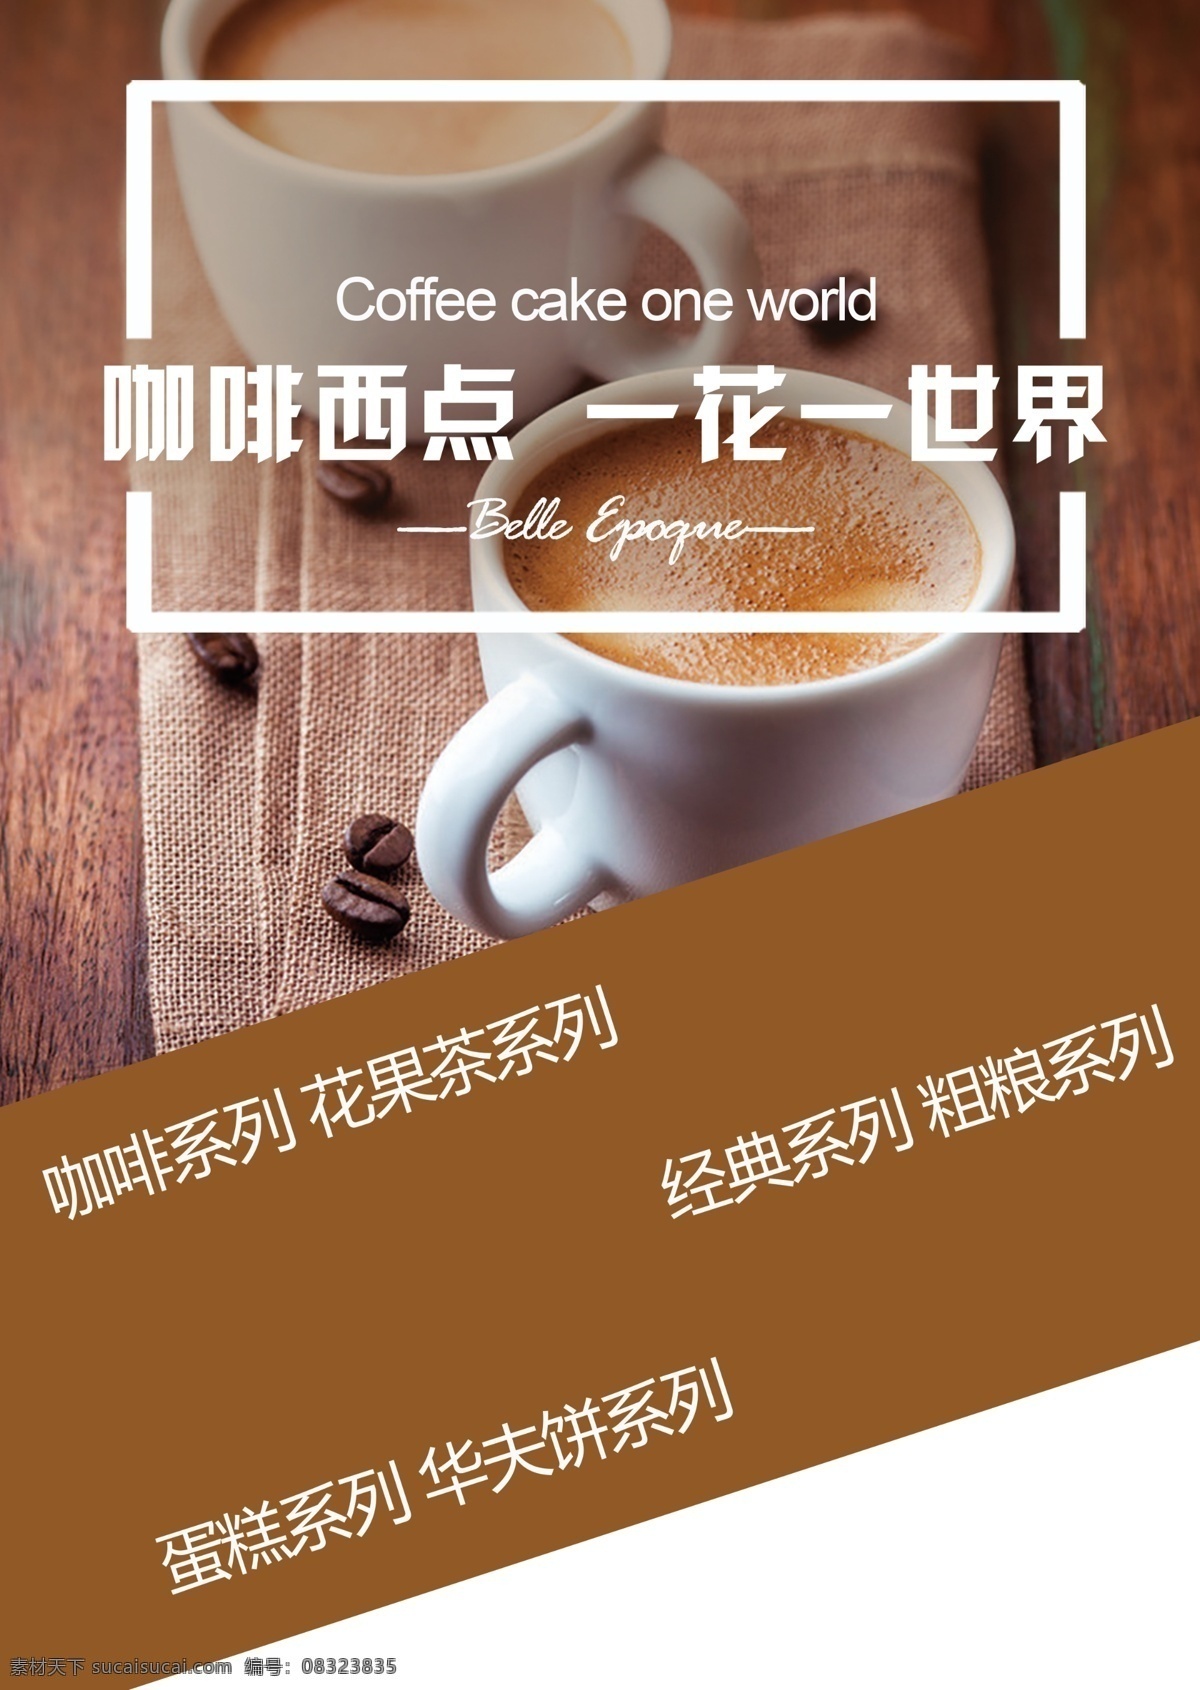 咖啡 西点 宣传单 下午茶 蛋糕 奶茶 餐厅 奶茶店宣传单 传单 餐厅宣传单 传单设计